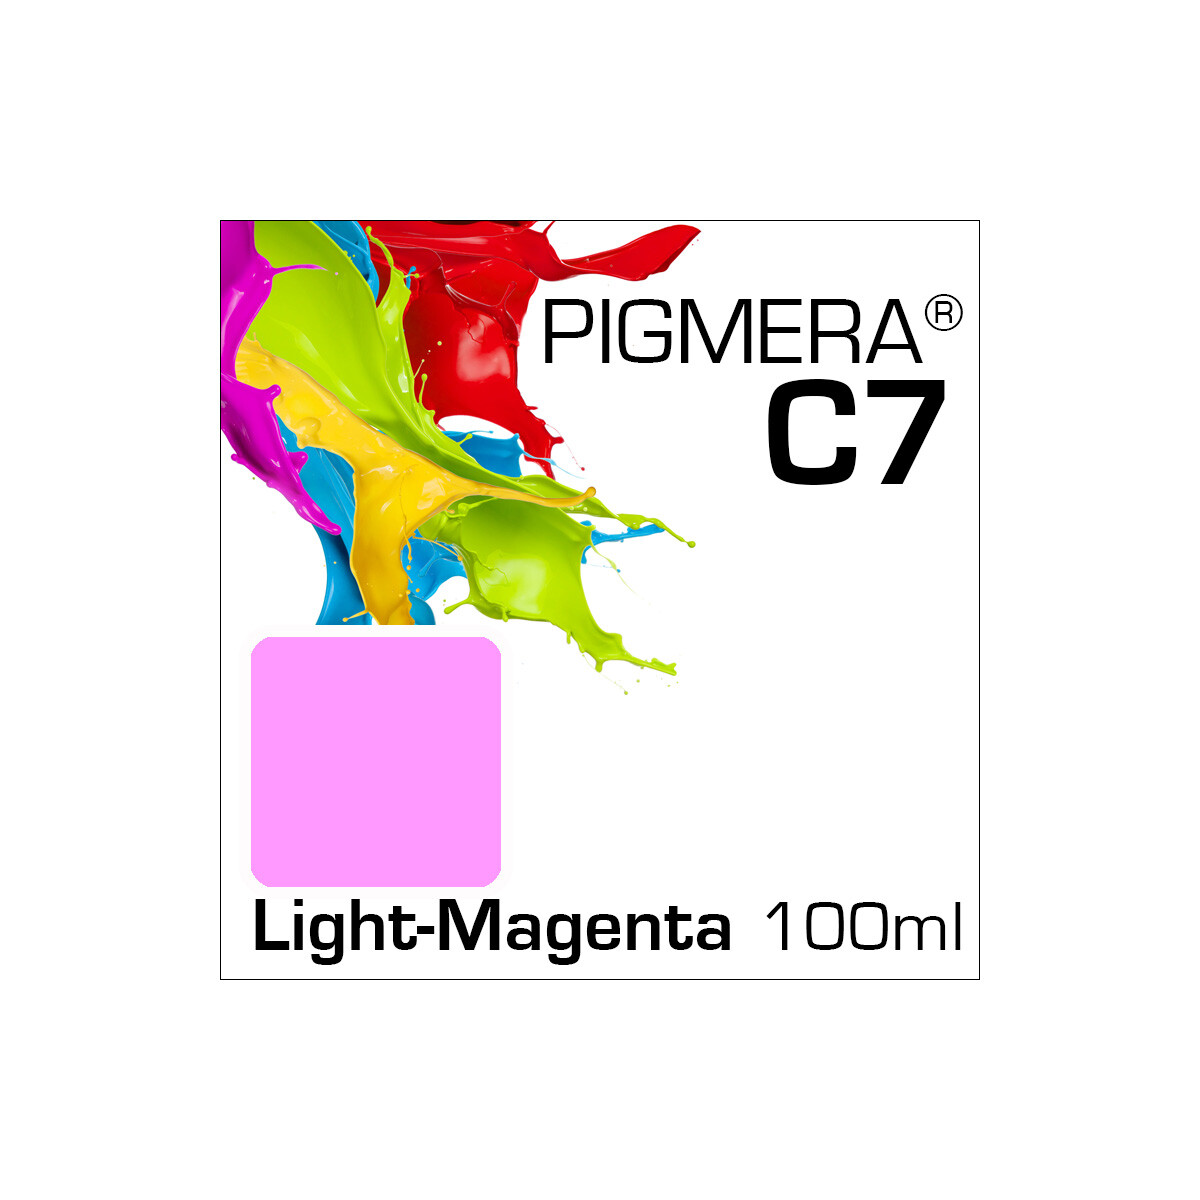 Pigmera C7 Flasche 100ml Light-Magenta (Abverkauf)